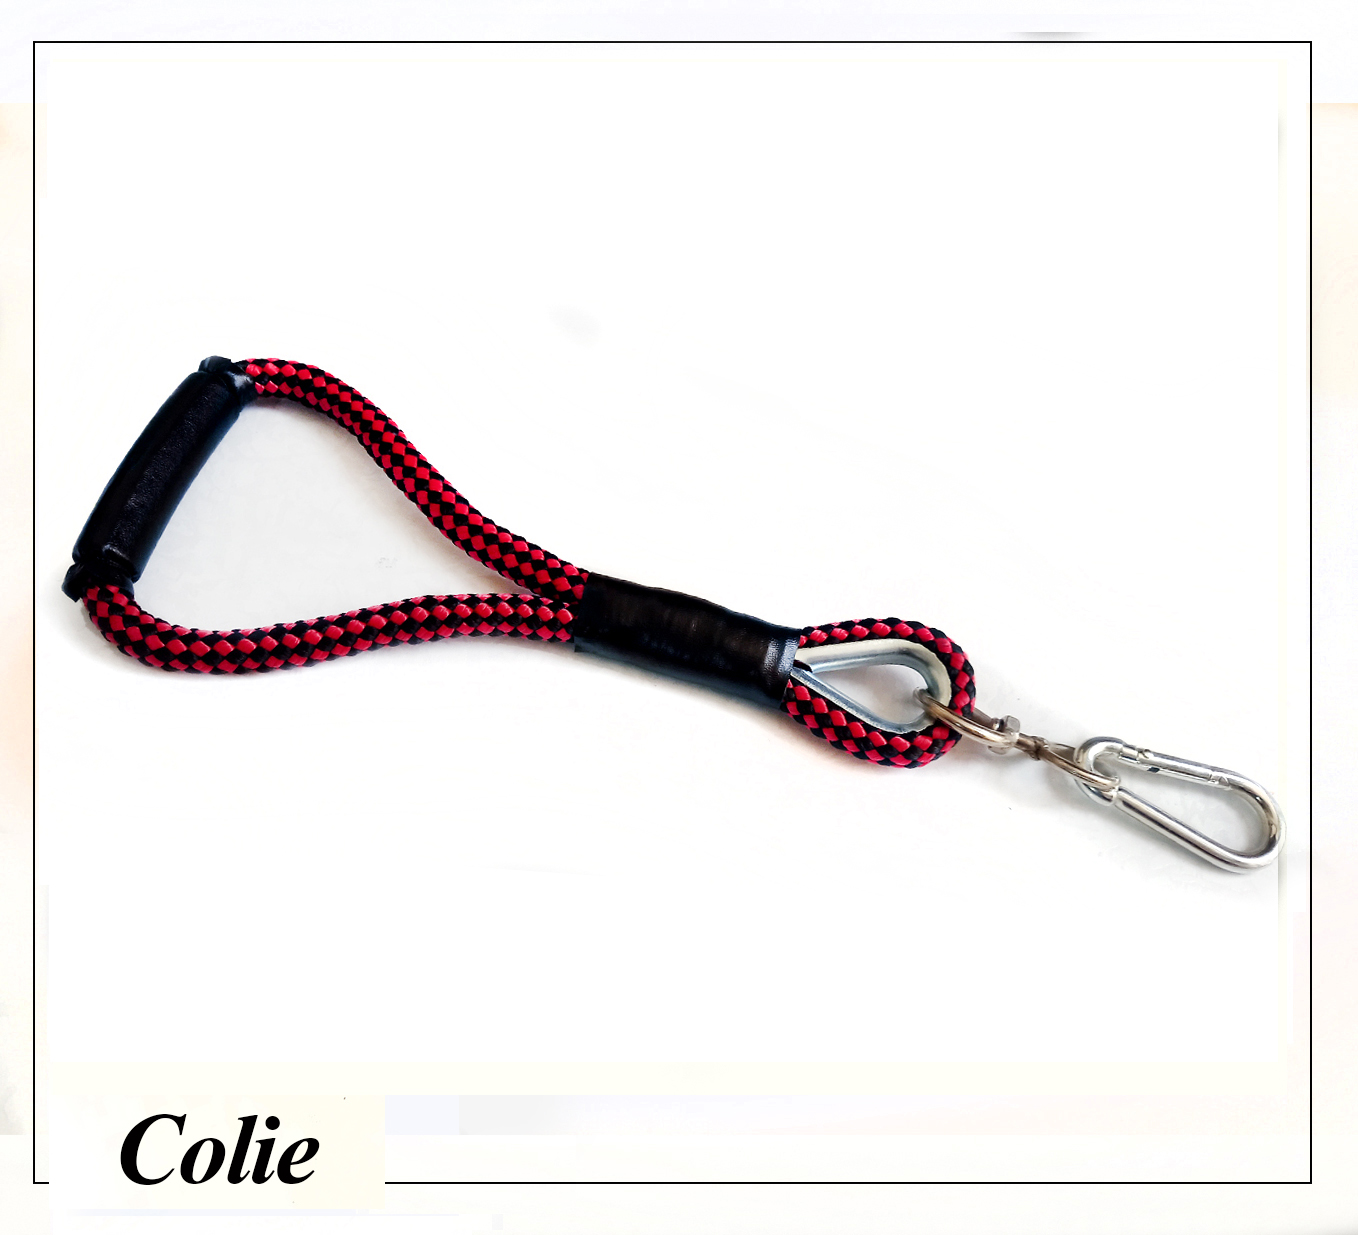 لید همراه کولی تهیه شده از طناب پاراکورد و یراق فولادی مناسب برای سگهای بزرگ و سنگین وزن می باشد.